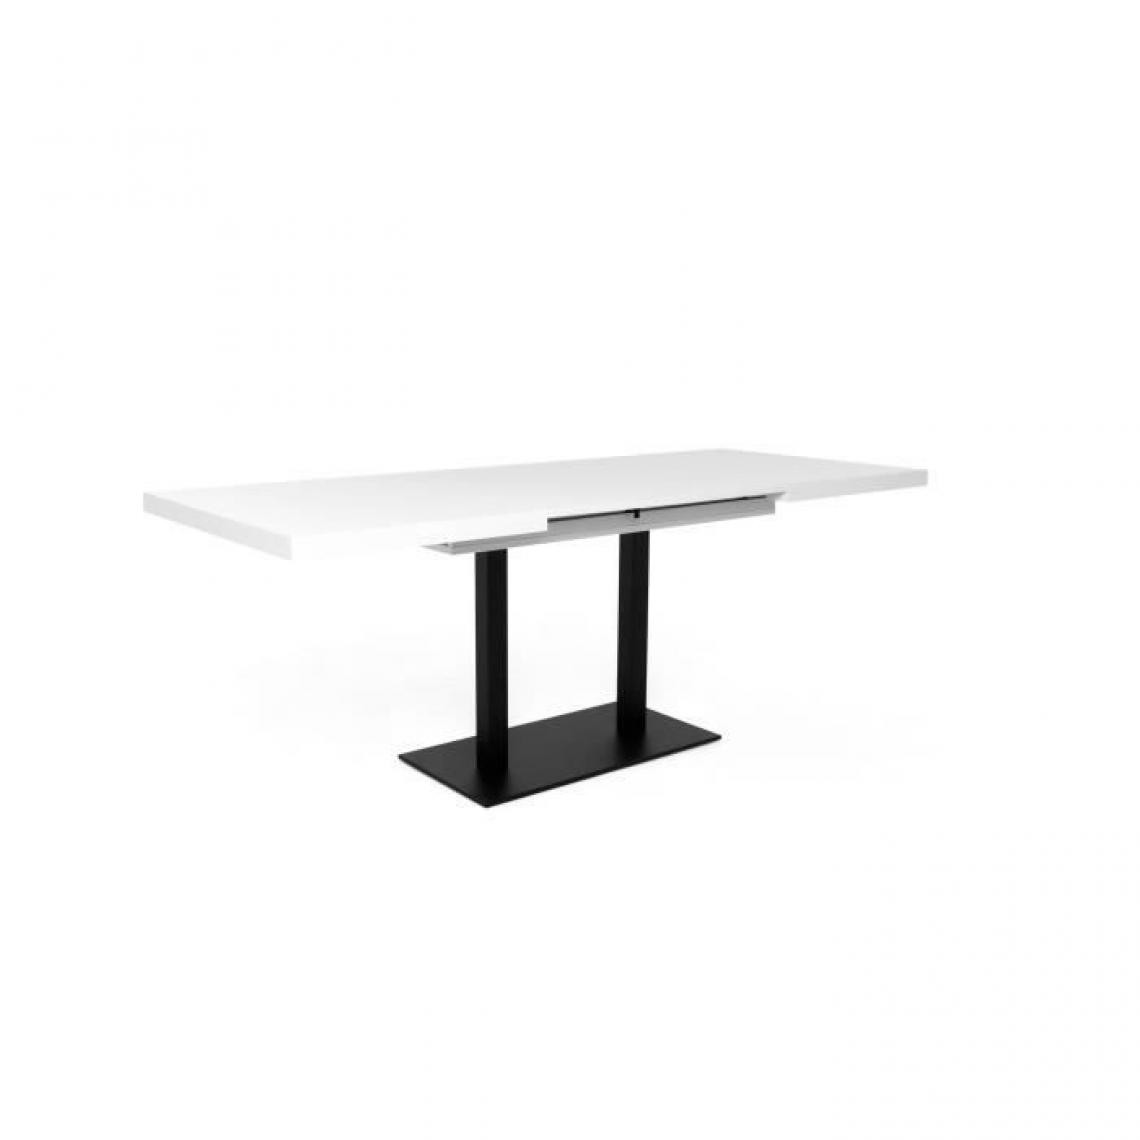 Cstore - ORLANDO Table a manger a rallonge - Style contemporain - Laqué blanc et noir - L 120-200 x P 80 x H 75 cm - Tables à manger